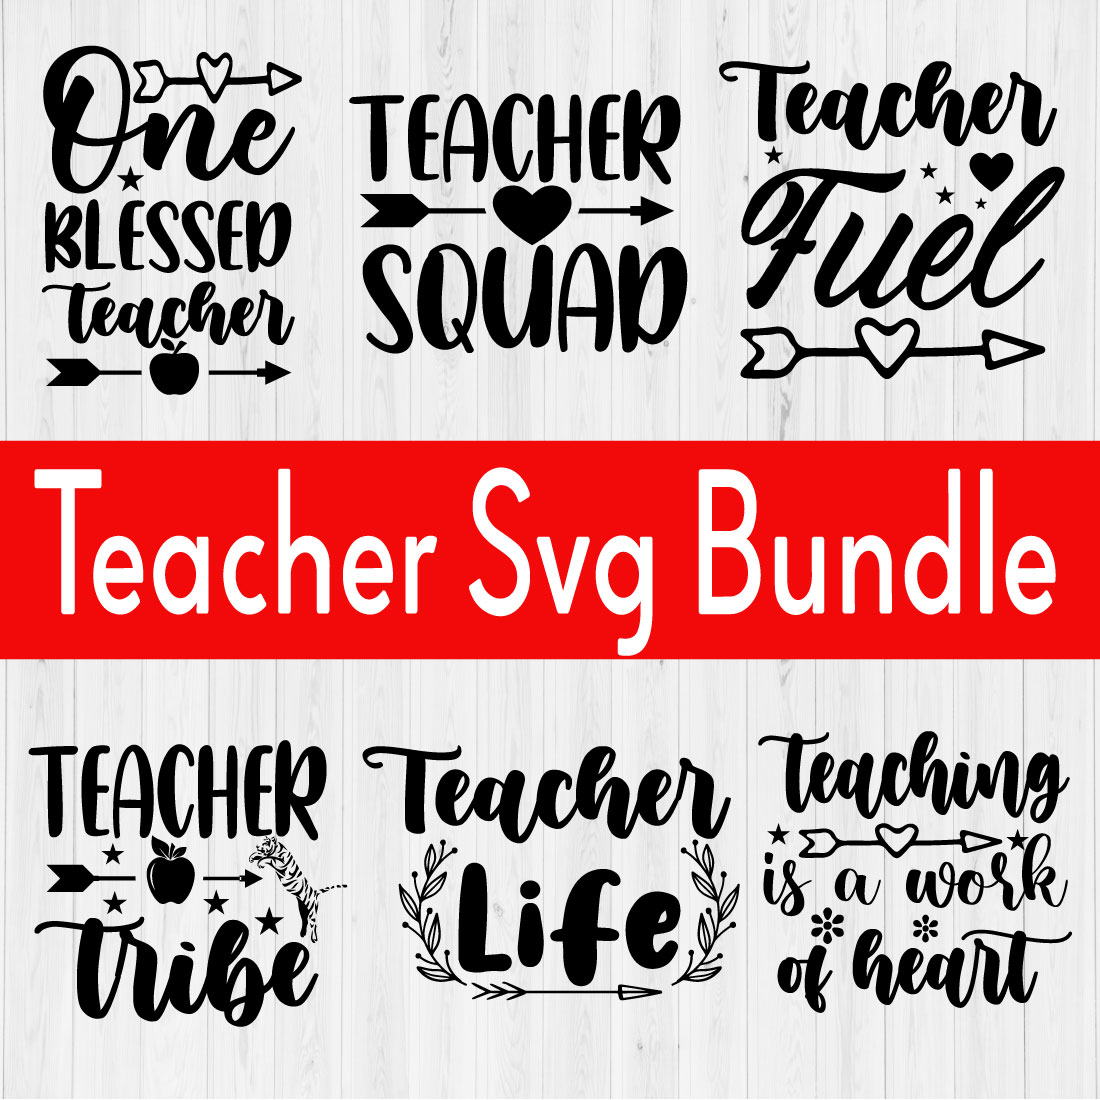 Teacher Svg Bundle Vol1 preview image.